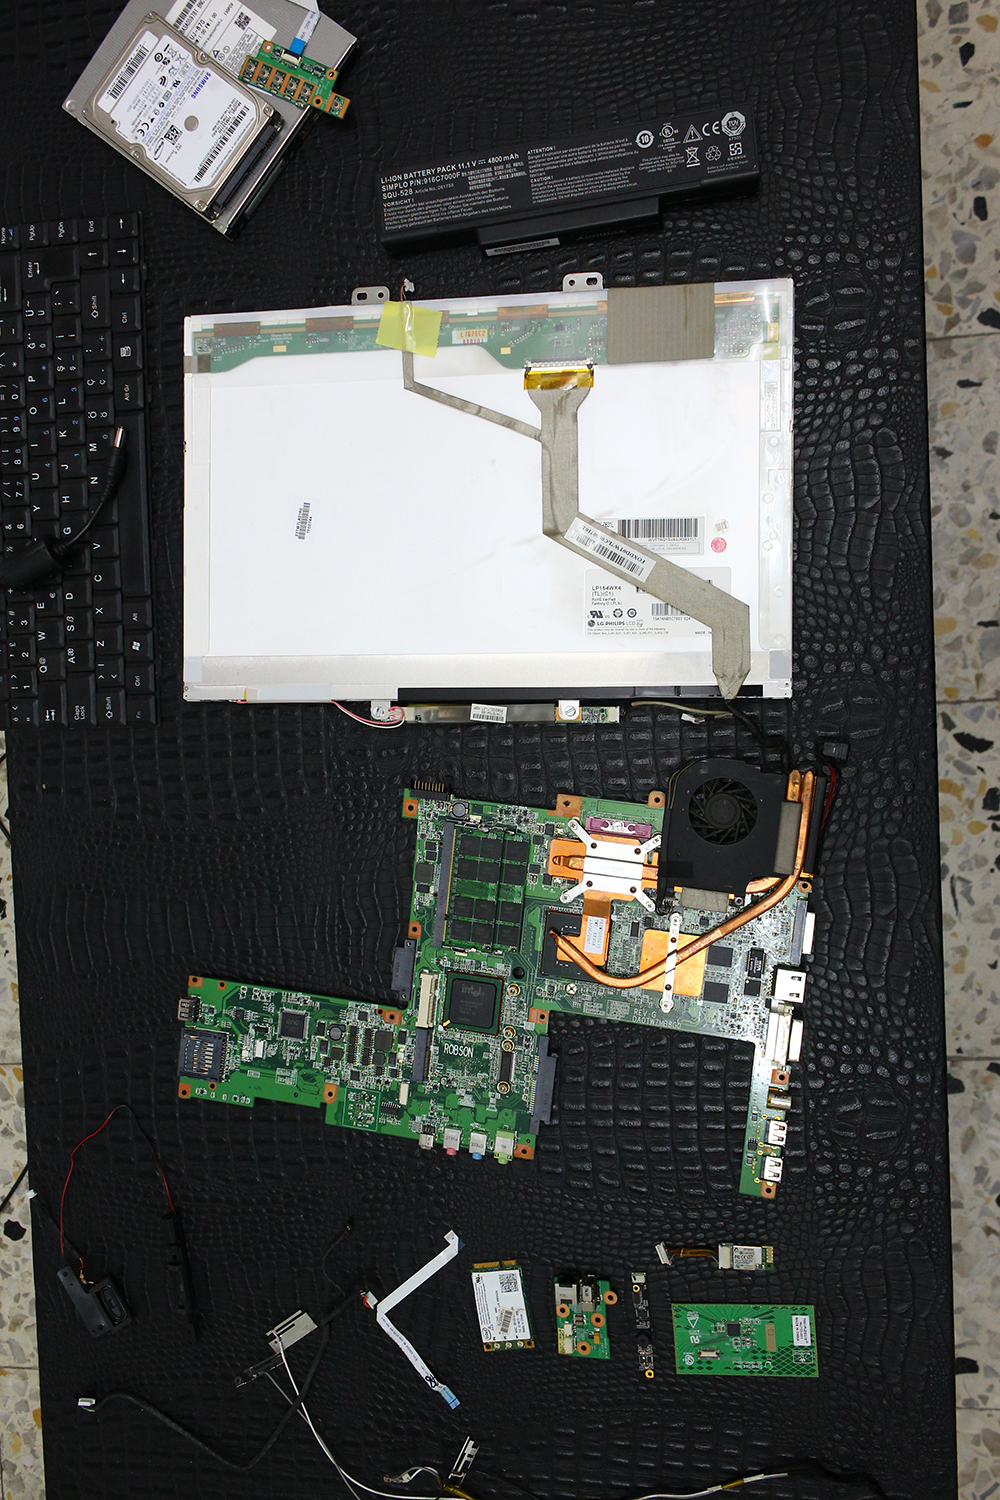  Casper TW7 komple dizüstü bilgisayar parçaları (hepsi çalışıyor) T7700, 2 GB RAM, 320 GB HDD